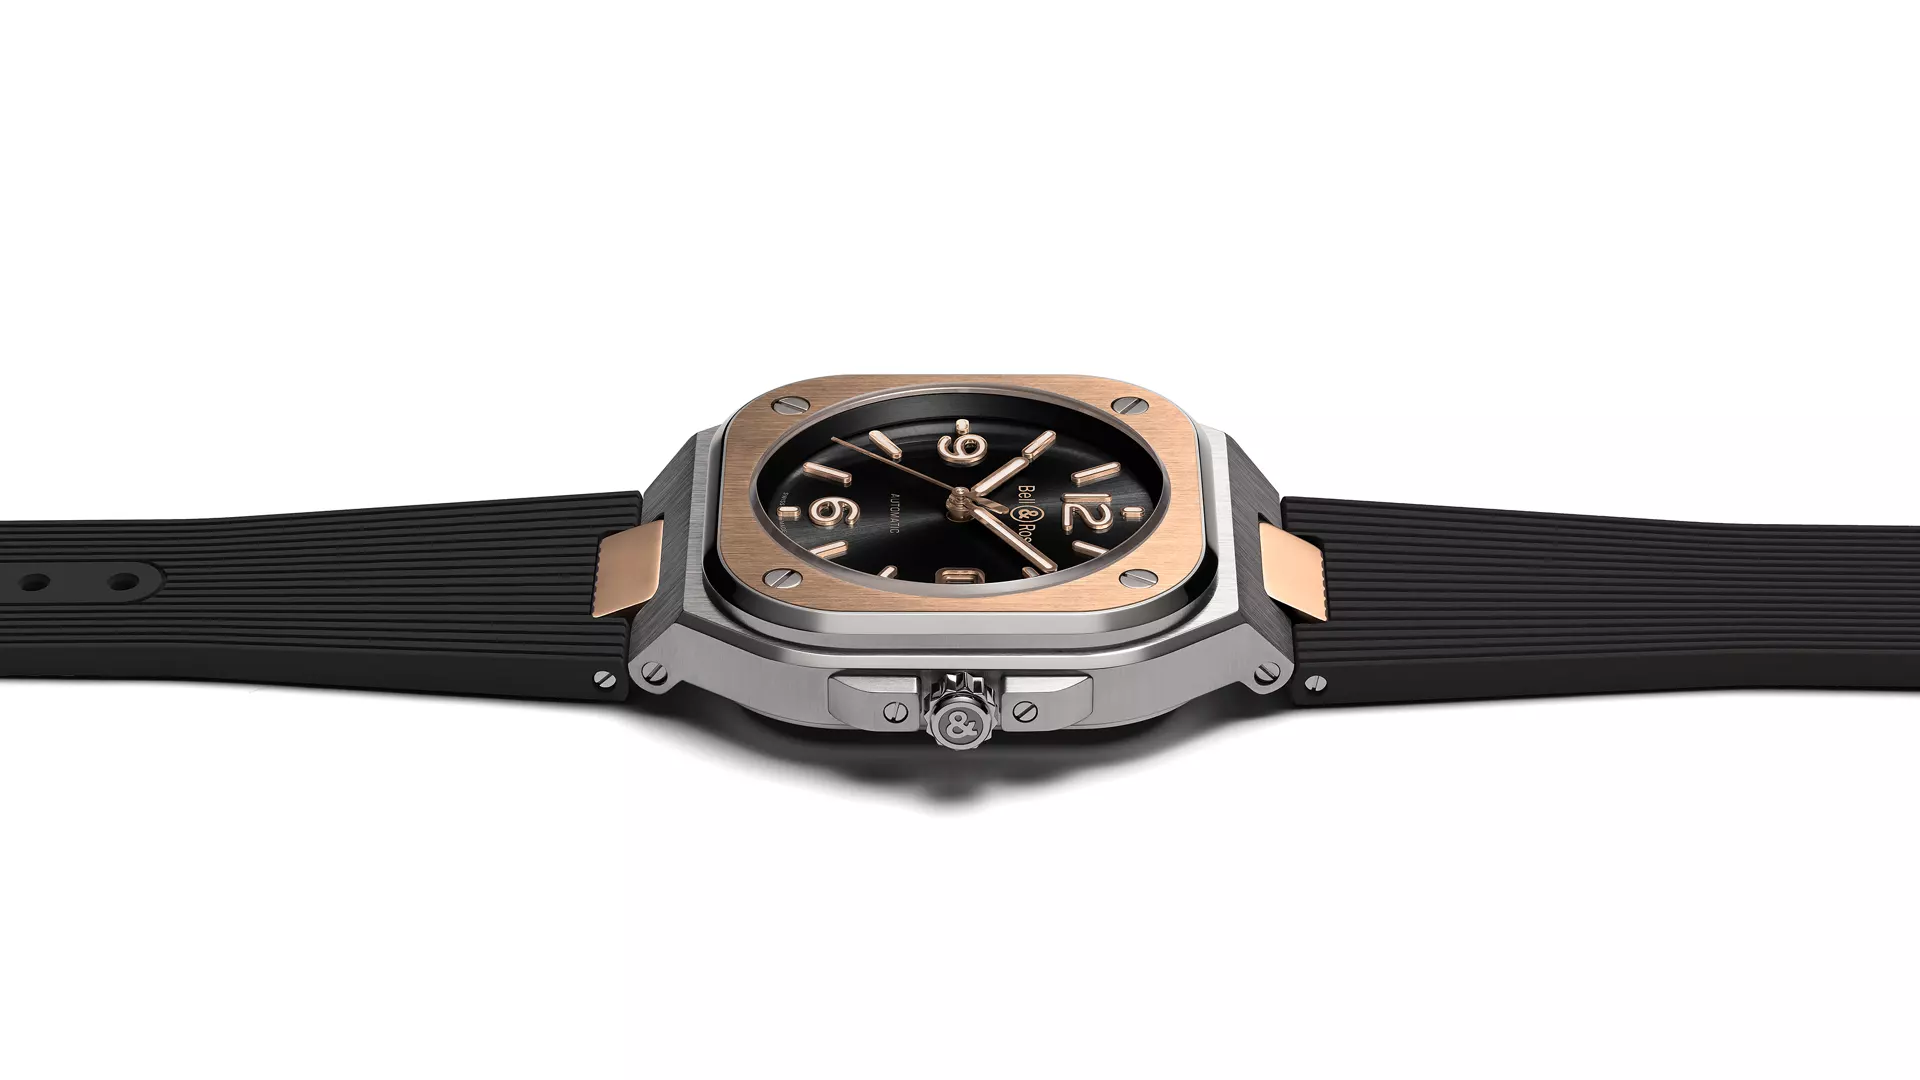 Men's watch / unisex  BELL & ROSS, BR 05 Black Steel & Gold / 40mm, SKU: BR05A-BL-STPG/SRB | watchapproach.com